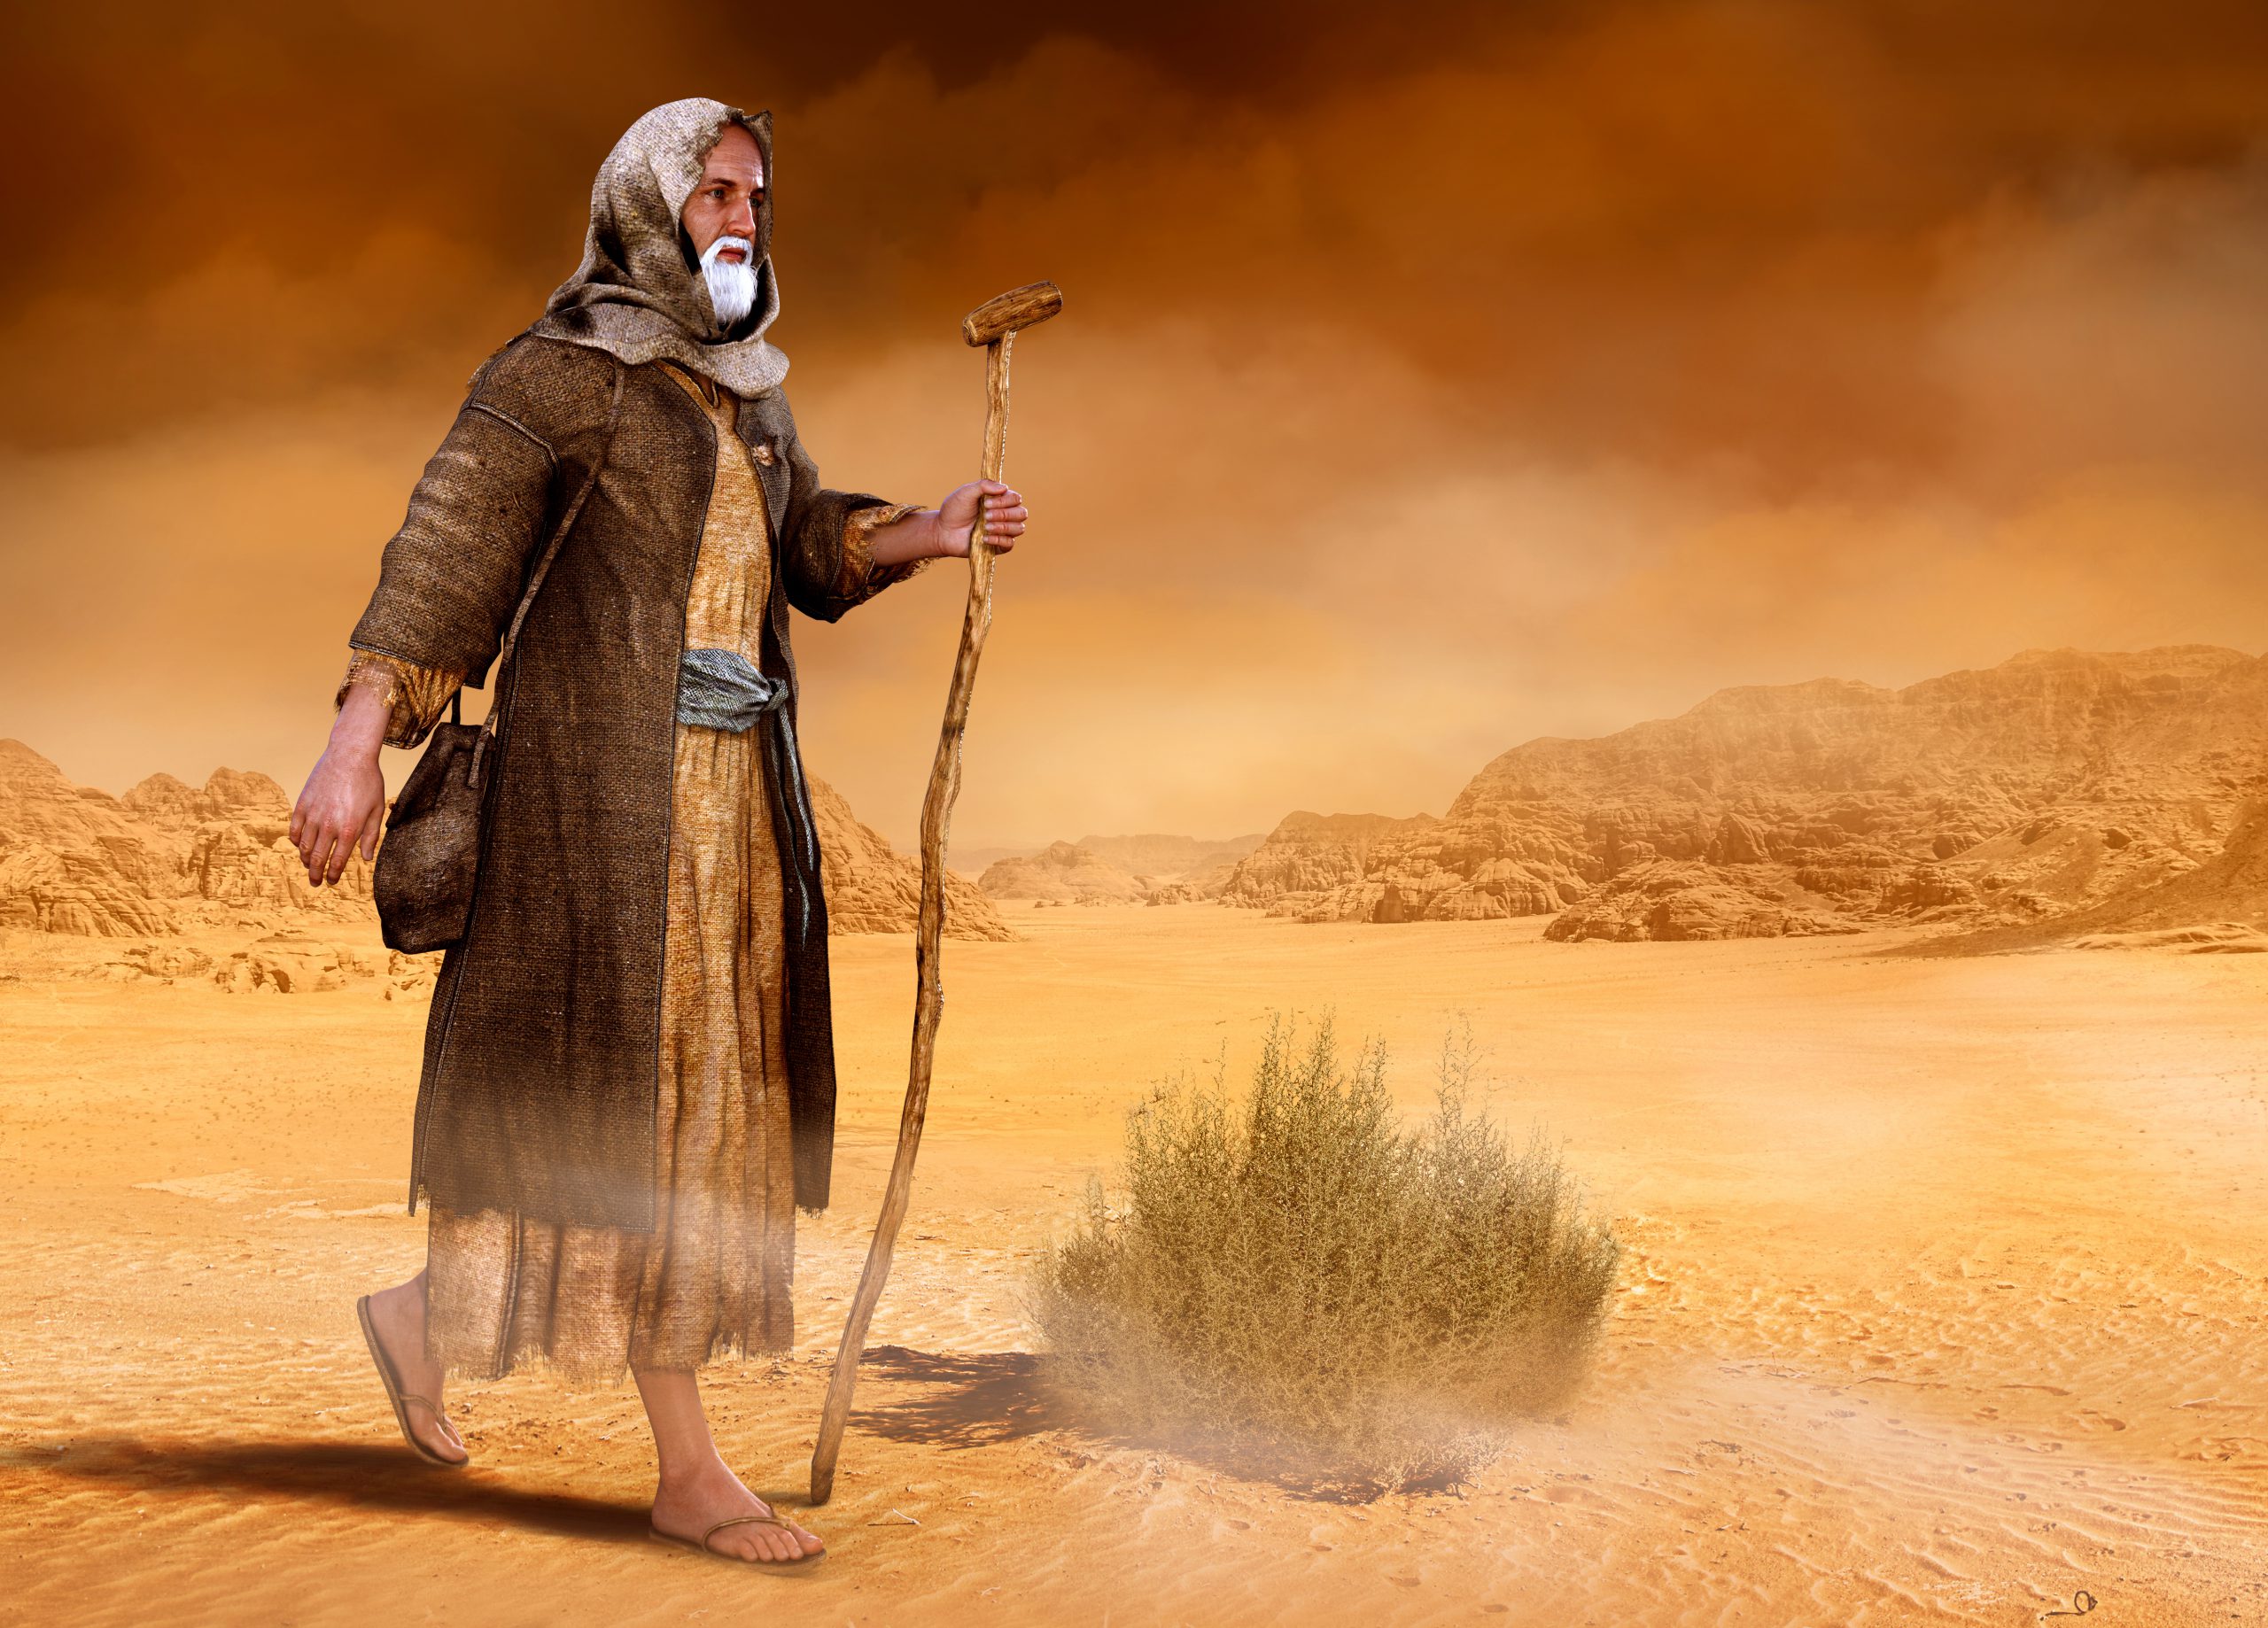 Moses walks through Sinai desert Exodus